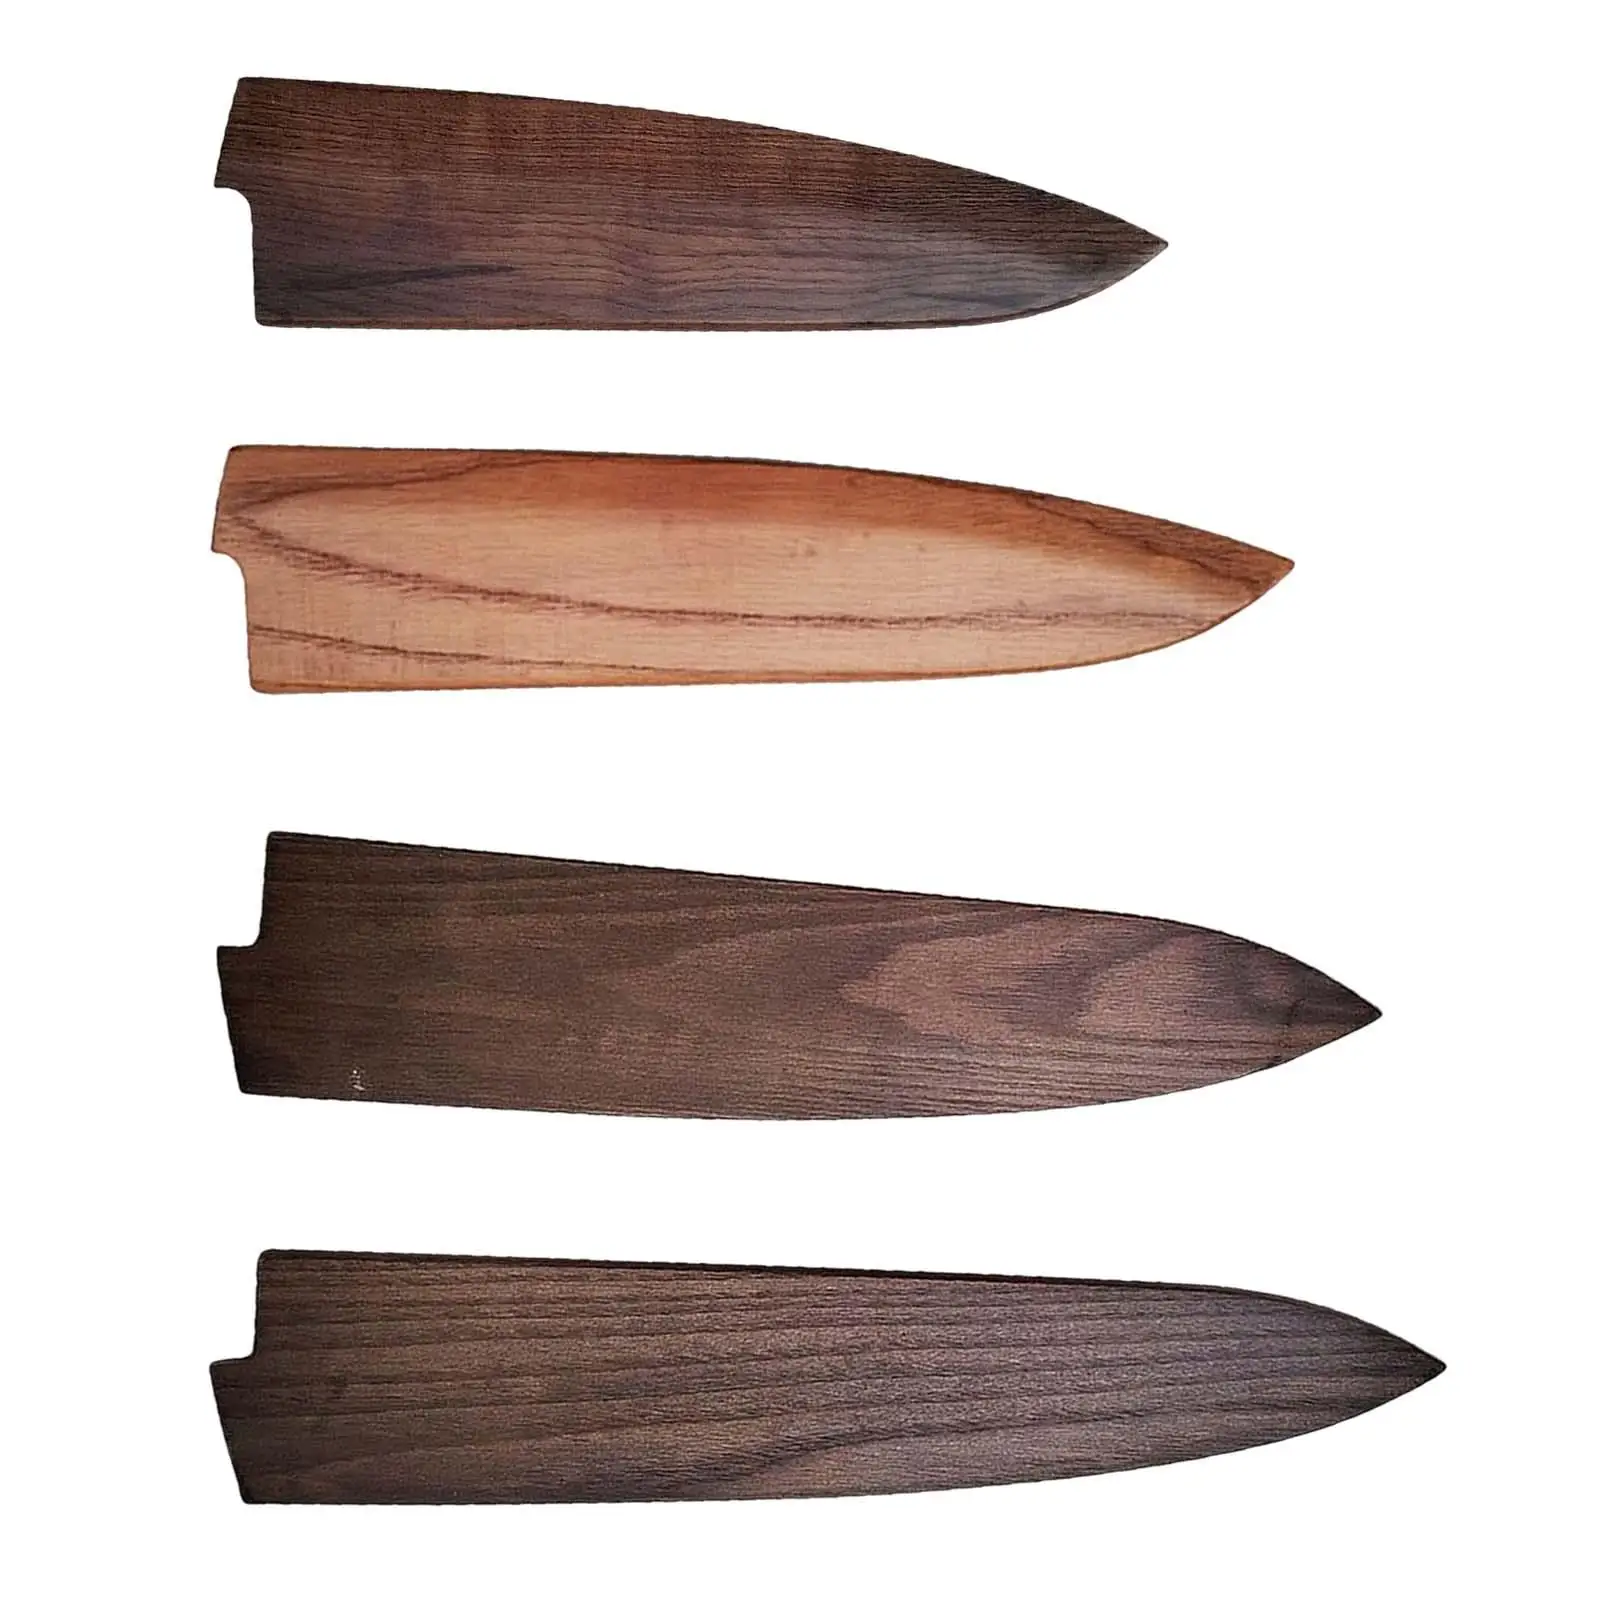  нож ножны деревянный клинок протектор резак чехол чехол сумка прочный для шеф-повара